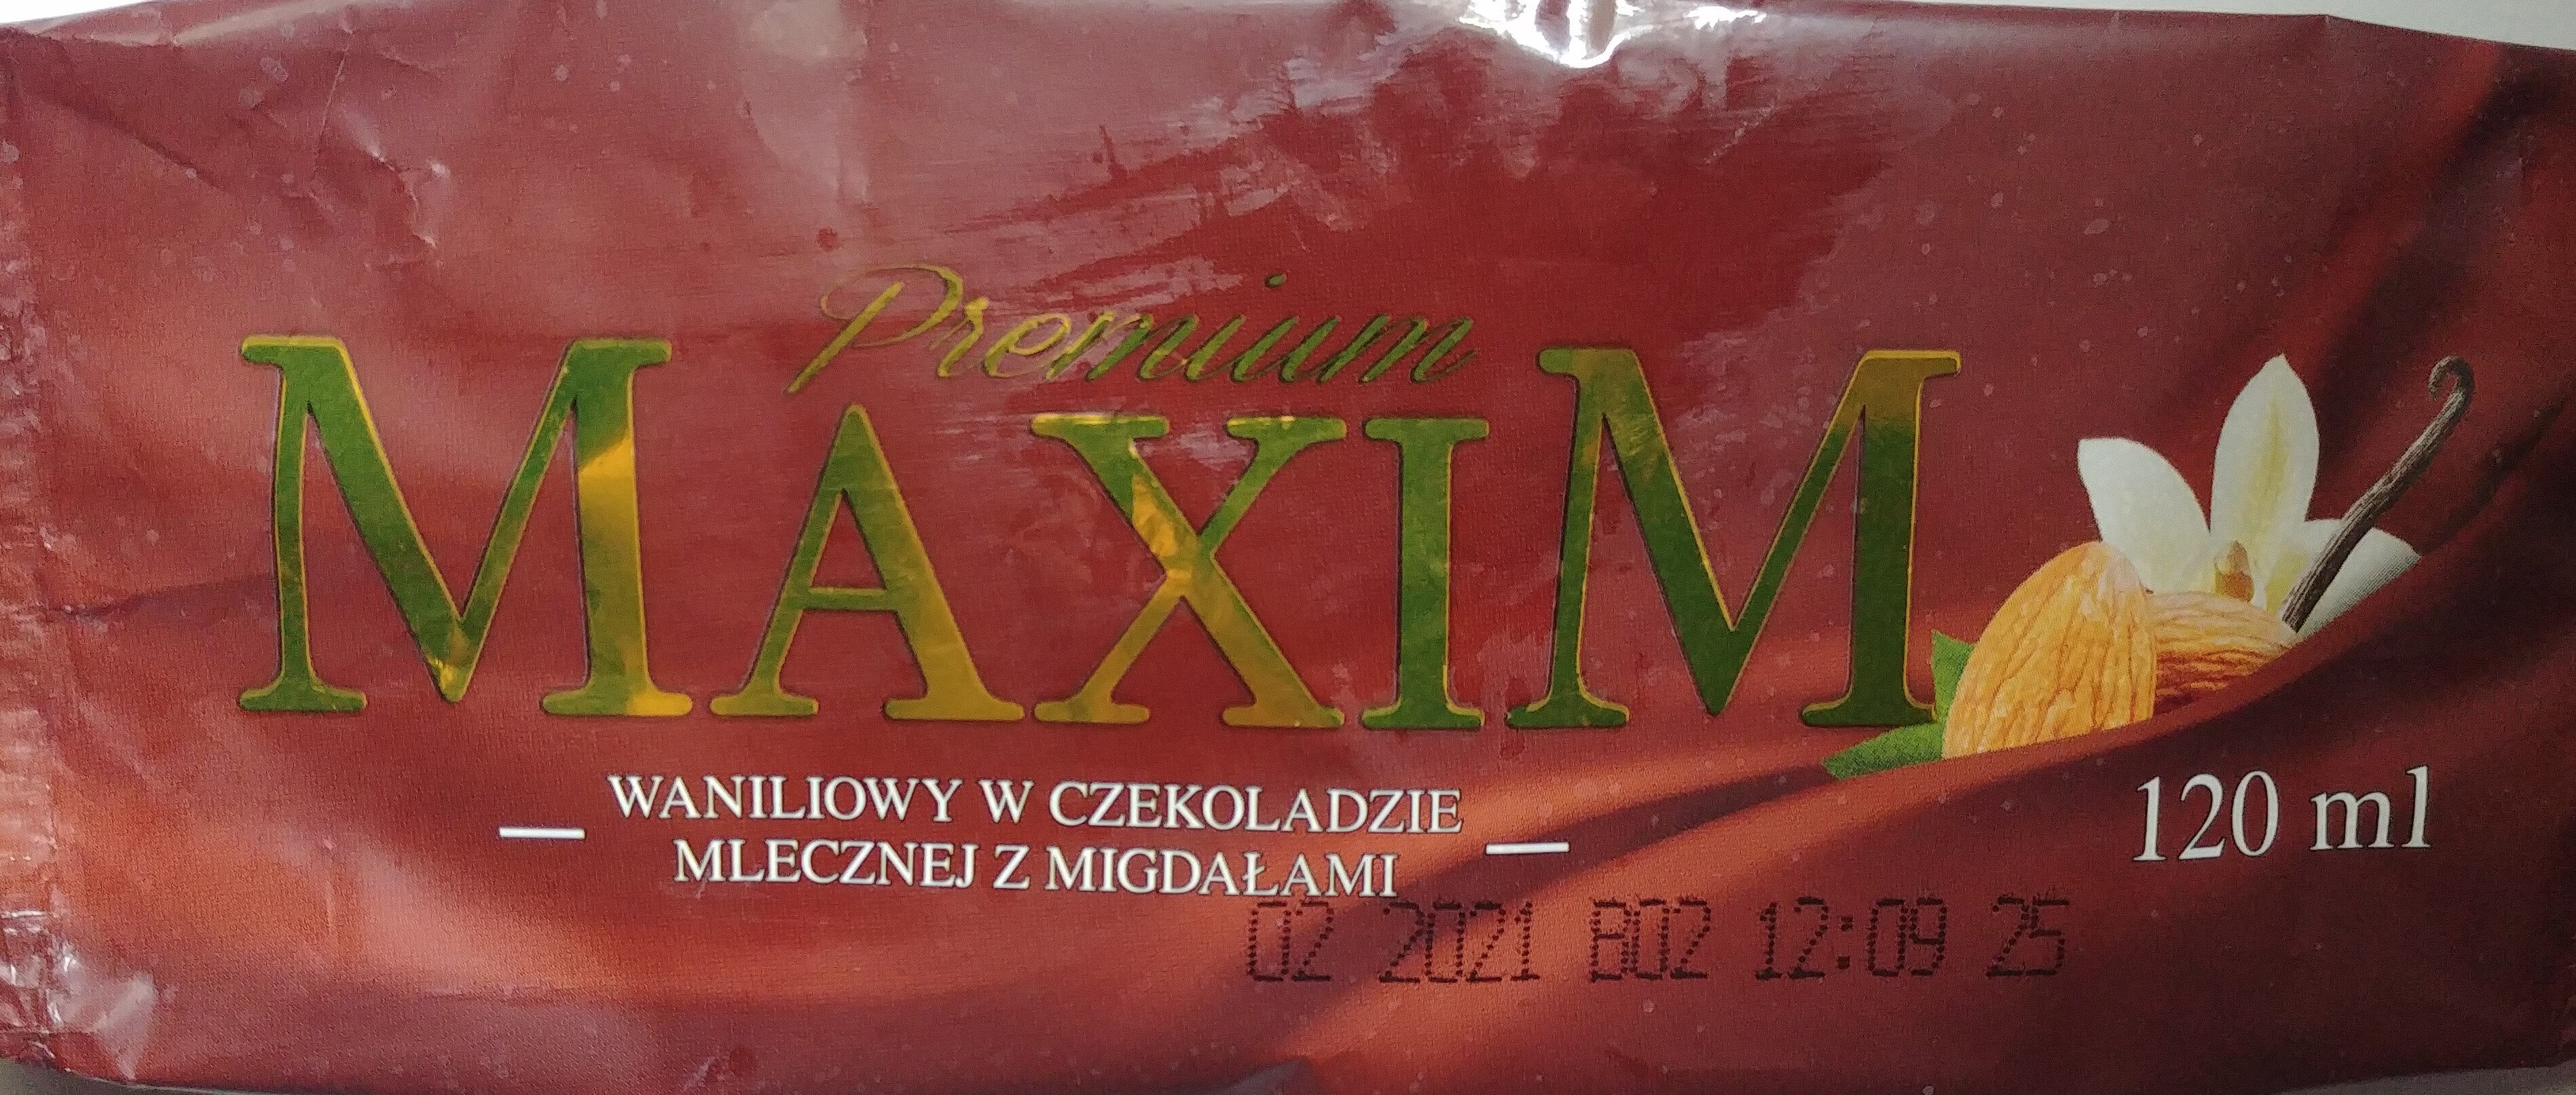 Maxim Premium Waniliowy w czekoladzie mlecznej z migdałami - Produkt